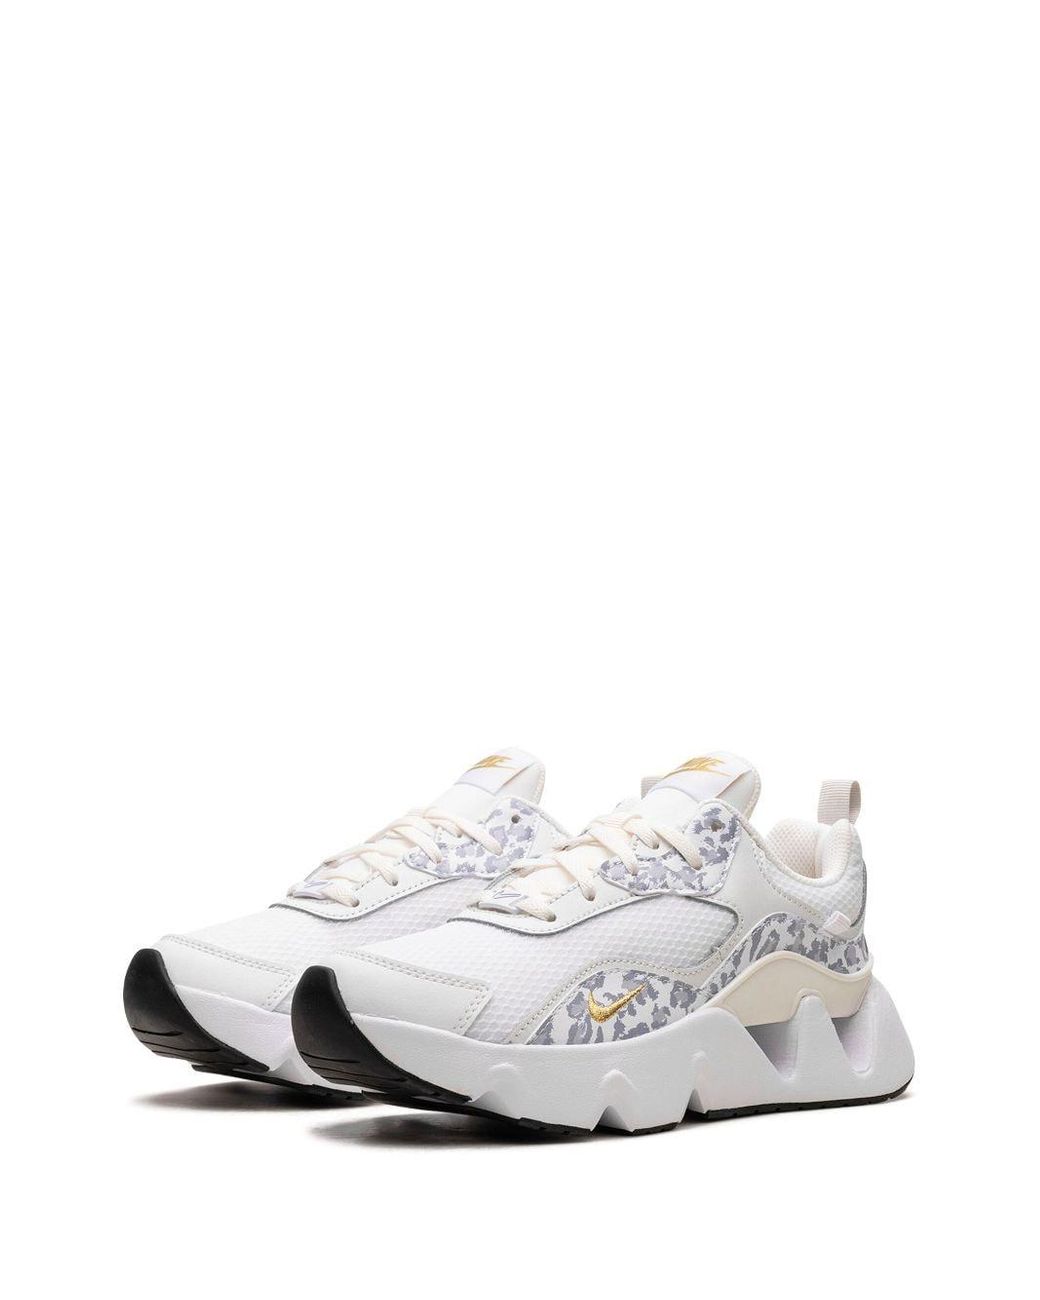 Nike Ryz 365 2 "leopard" Sneakers in White | Lyst Australia